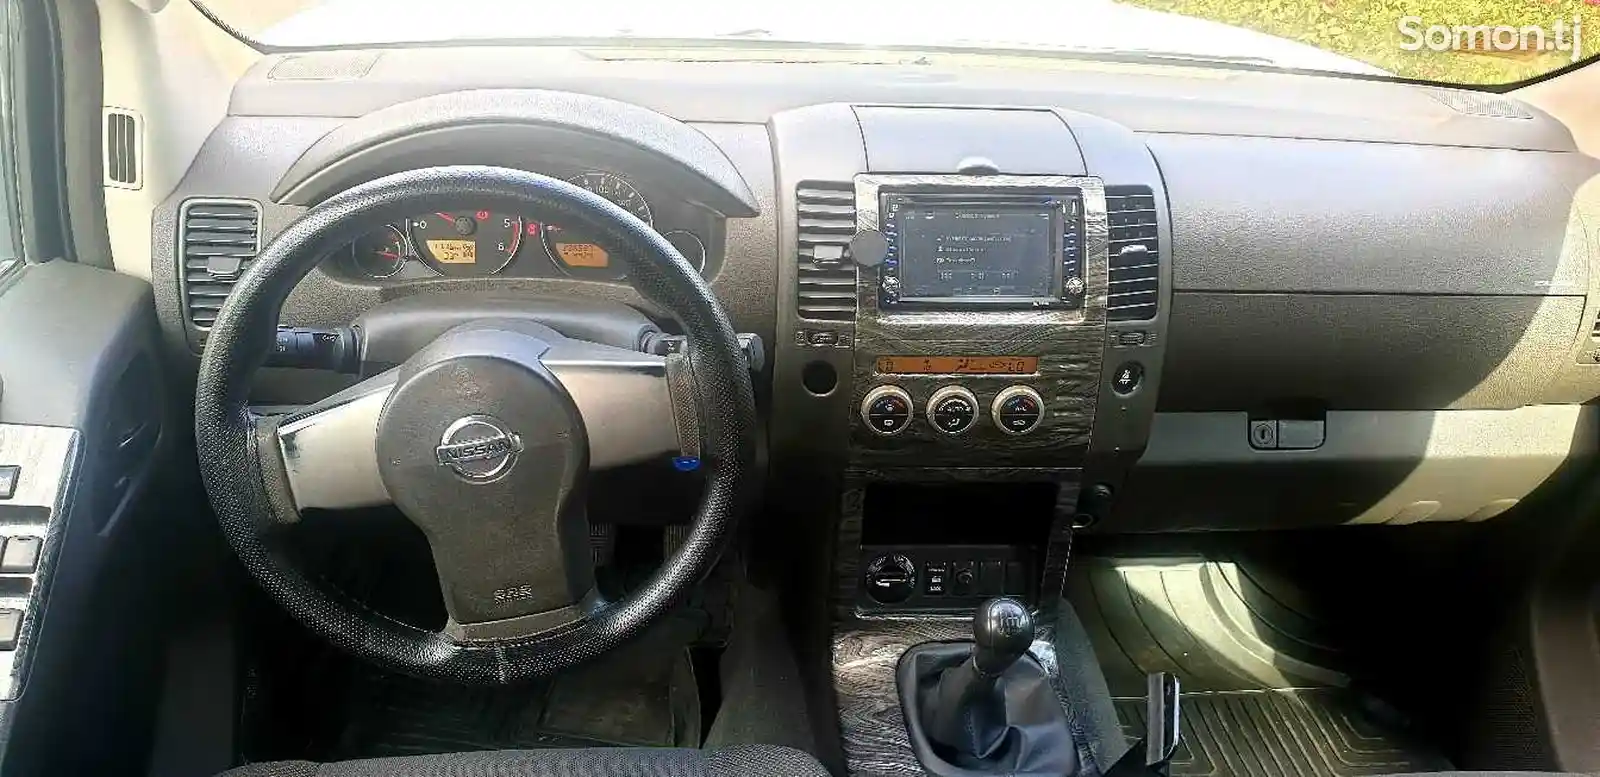 Nissan Pathfinder, 2007-2